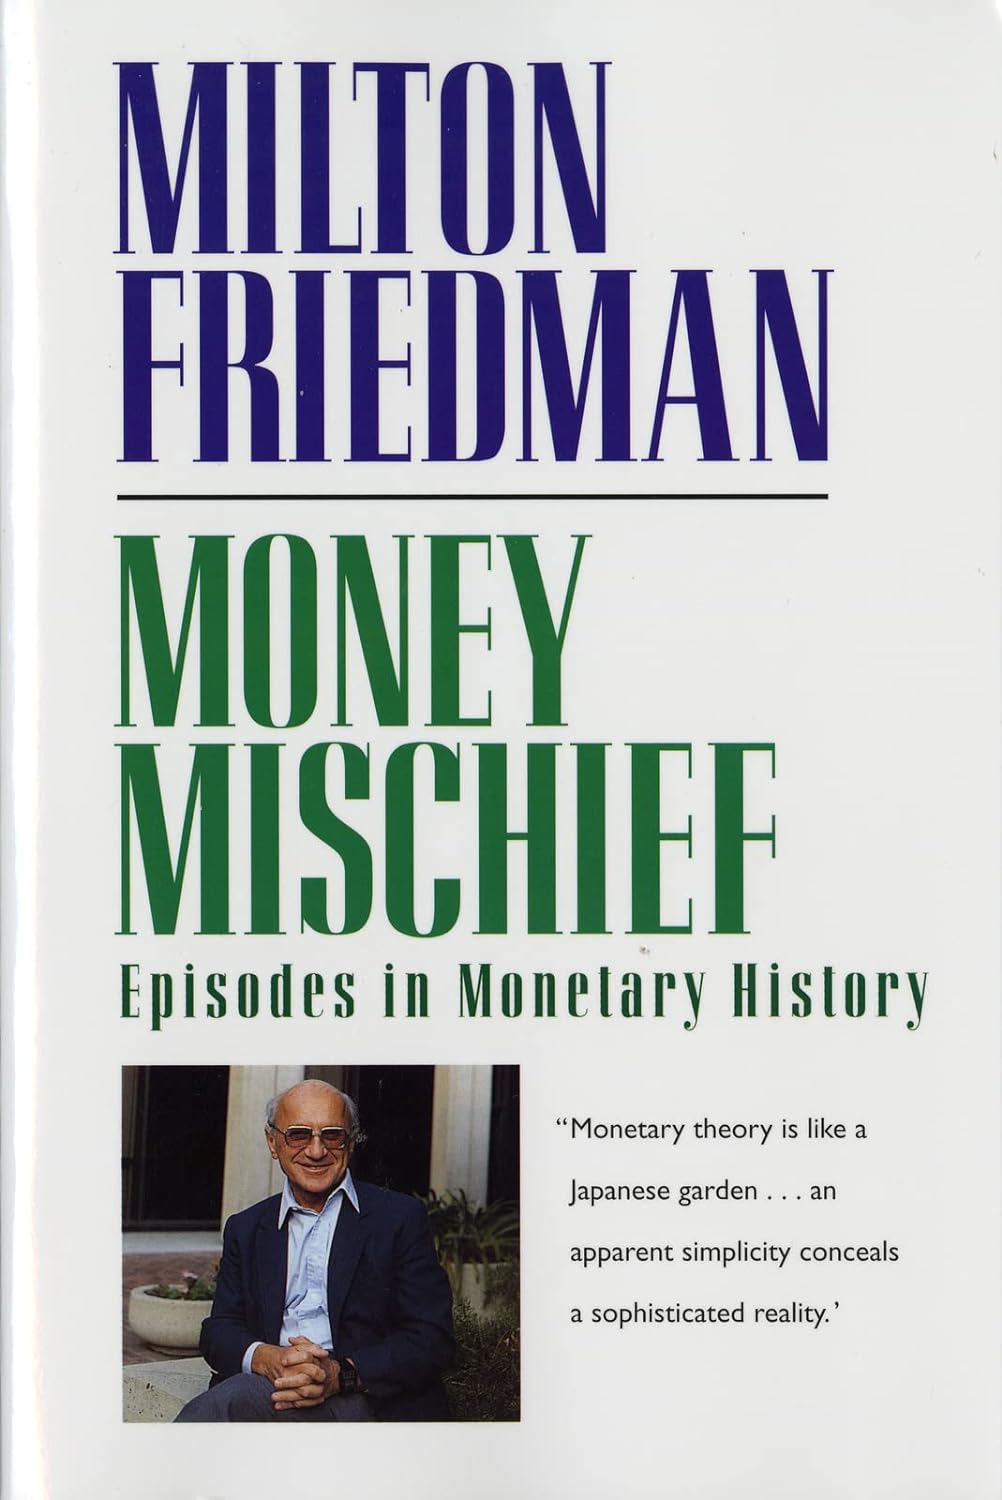 Book cover: "Money Mischief."